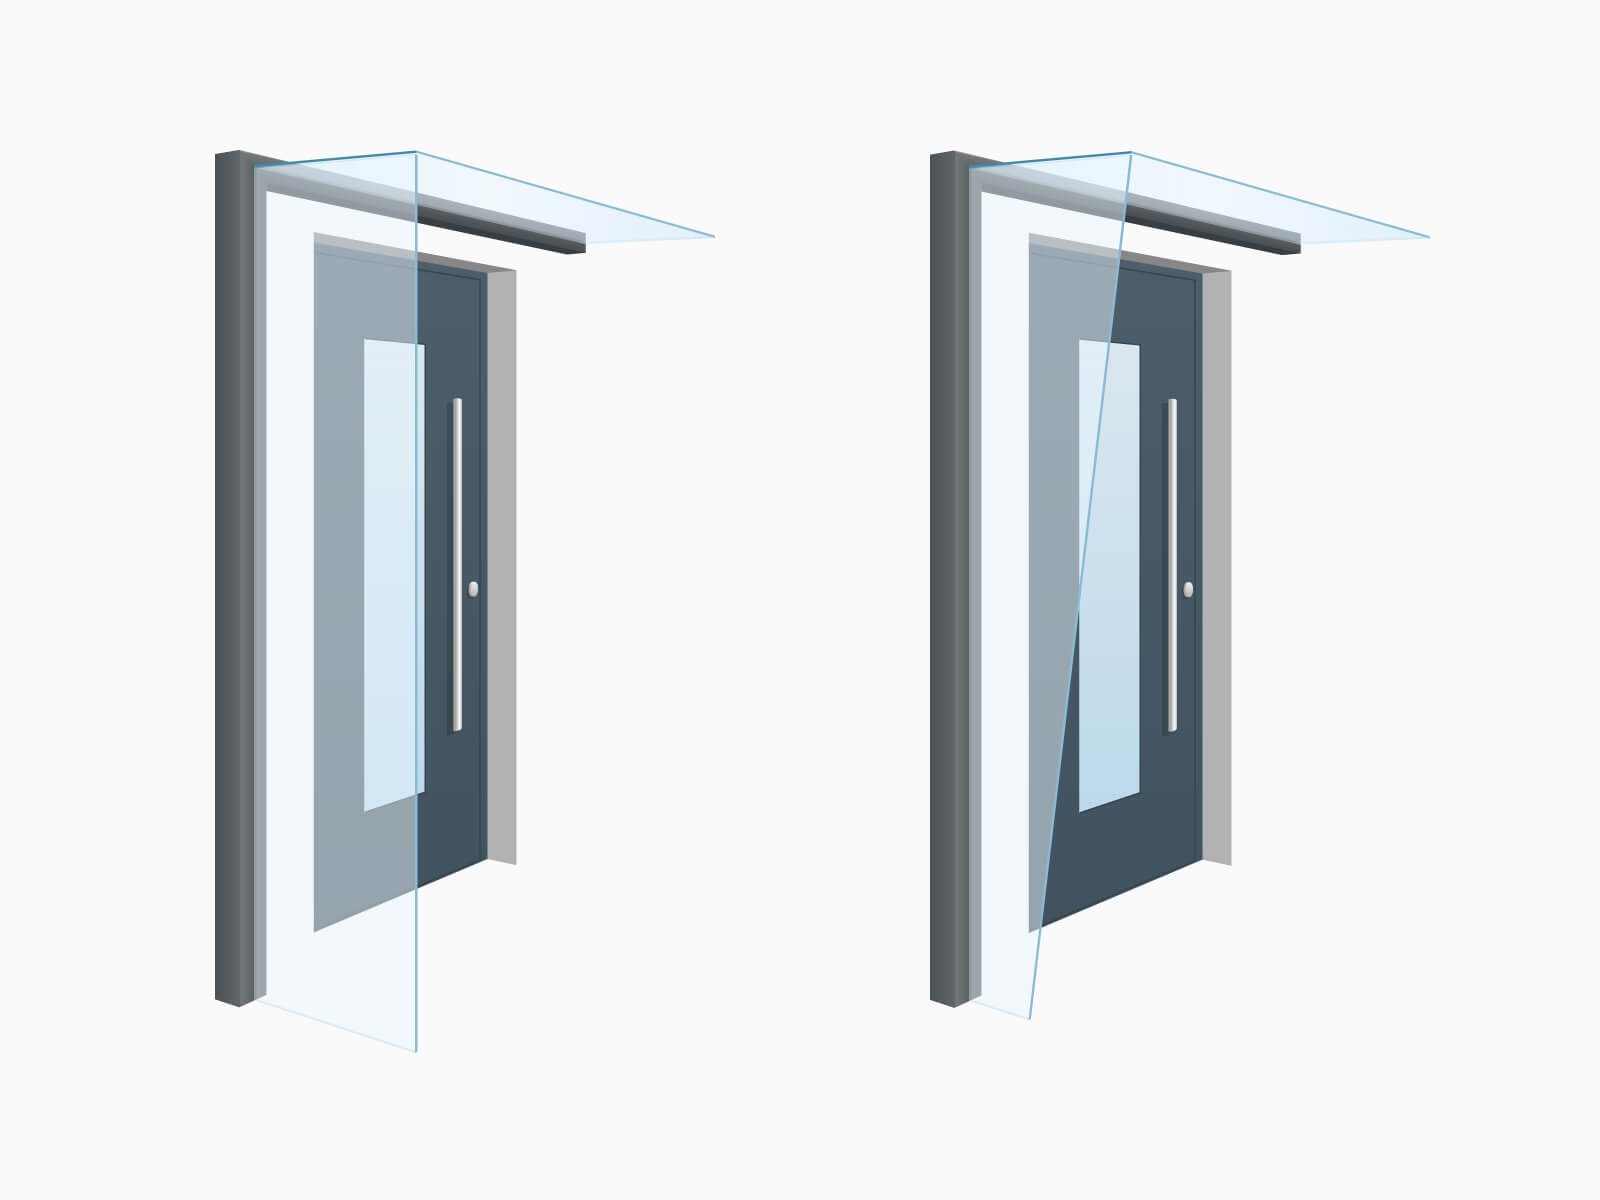 Individuelle Glas und Schrägschnitte beim Seitenwindschutz Blend passend zu jedem Vordach